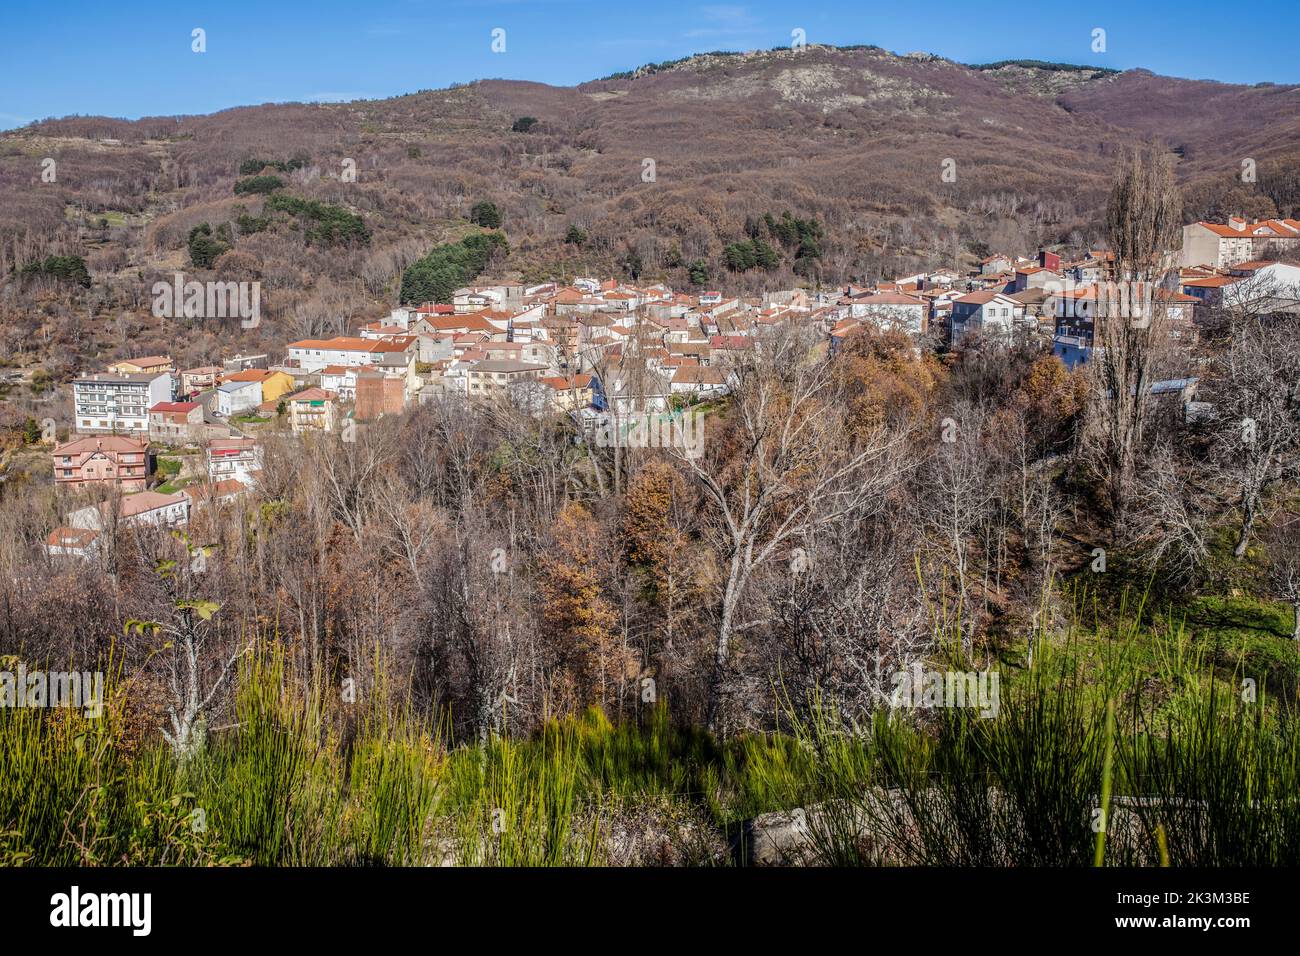 La Garganta vista general del pueblo. Valle de Ambroz, Cáceres, Extremadura, España Foto de stock